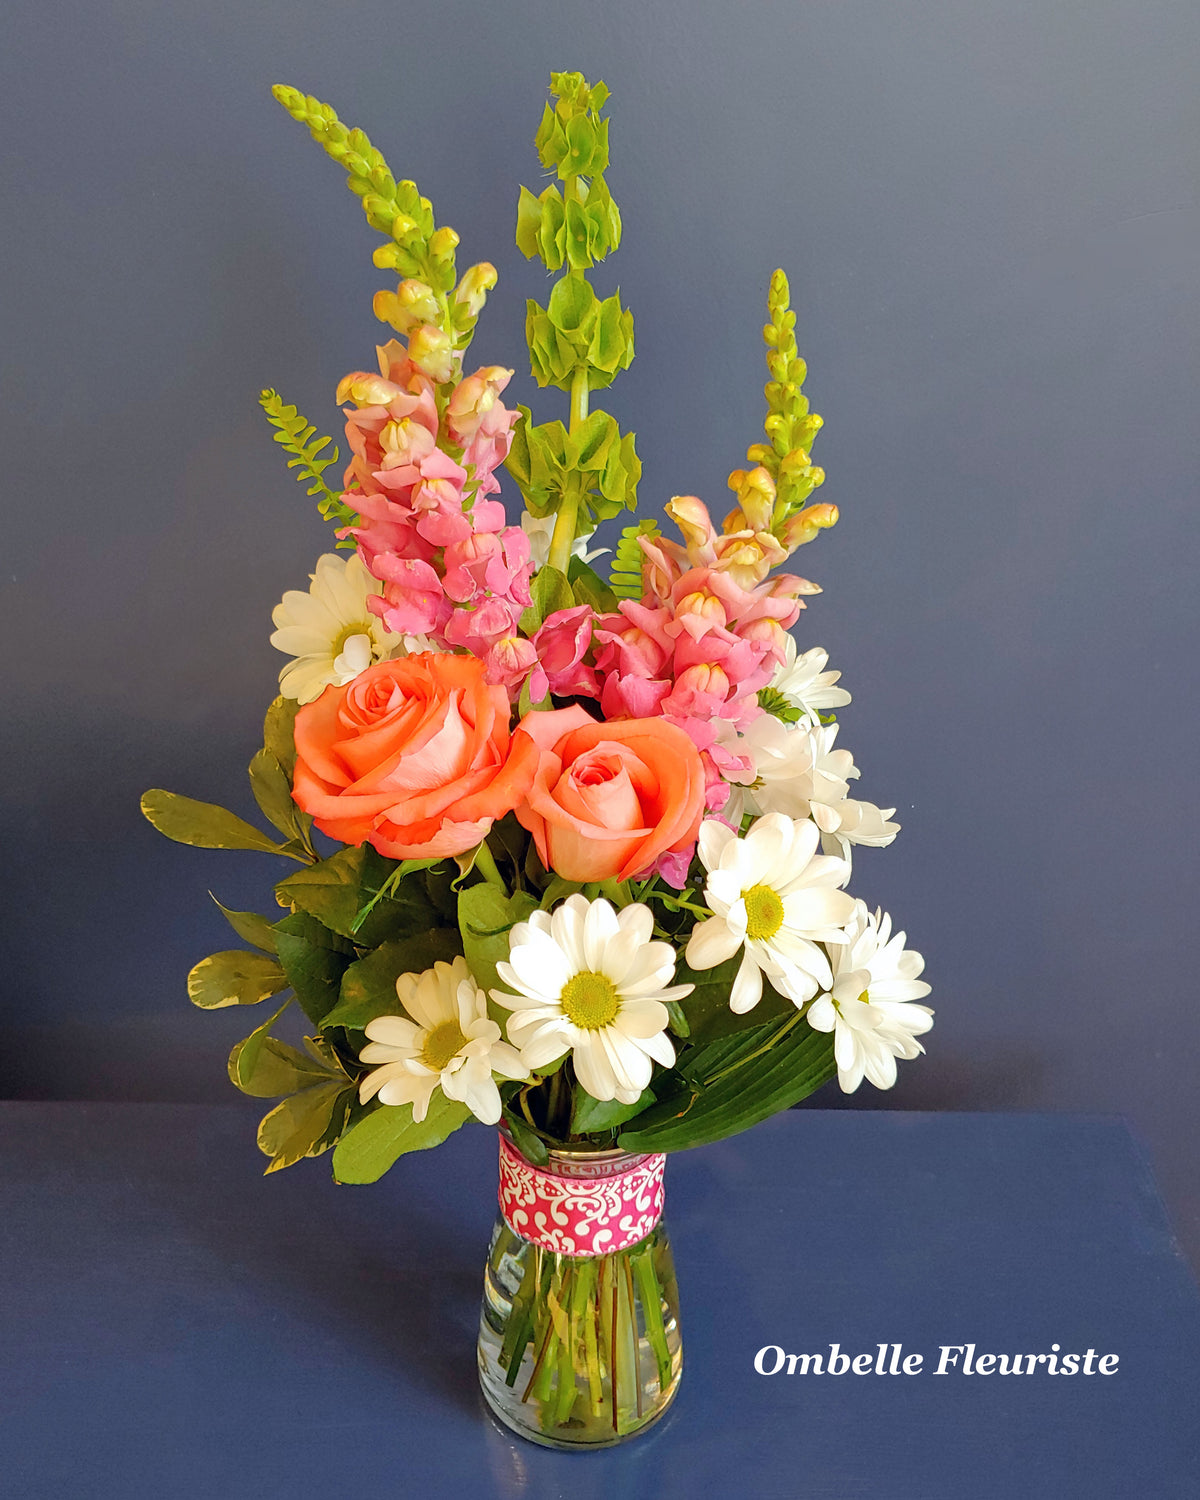 Ombelle Fleuriste - Bouquet de fleurs - Maria